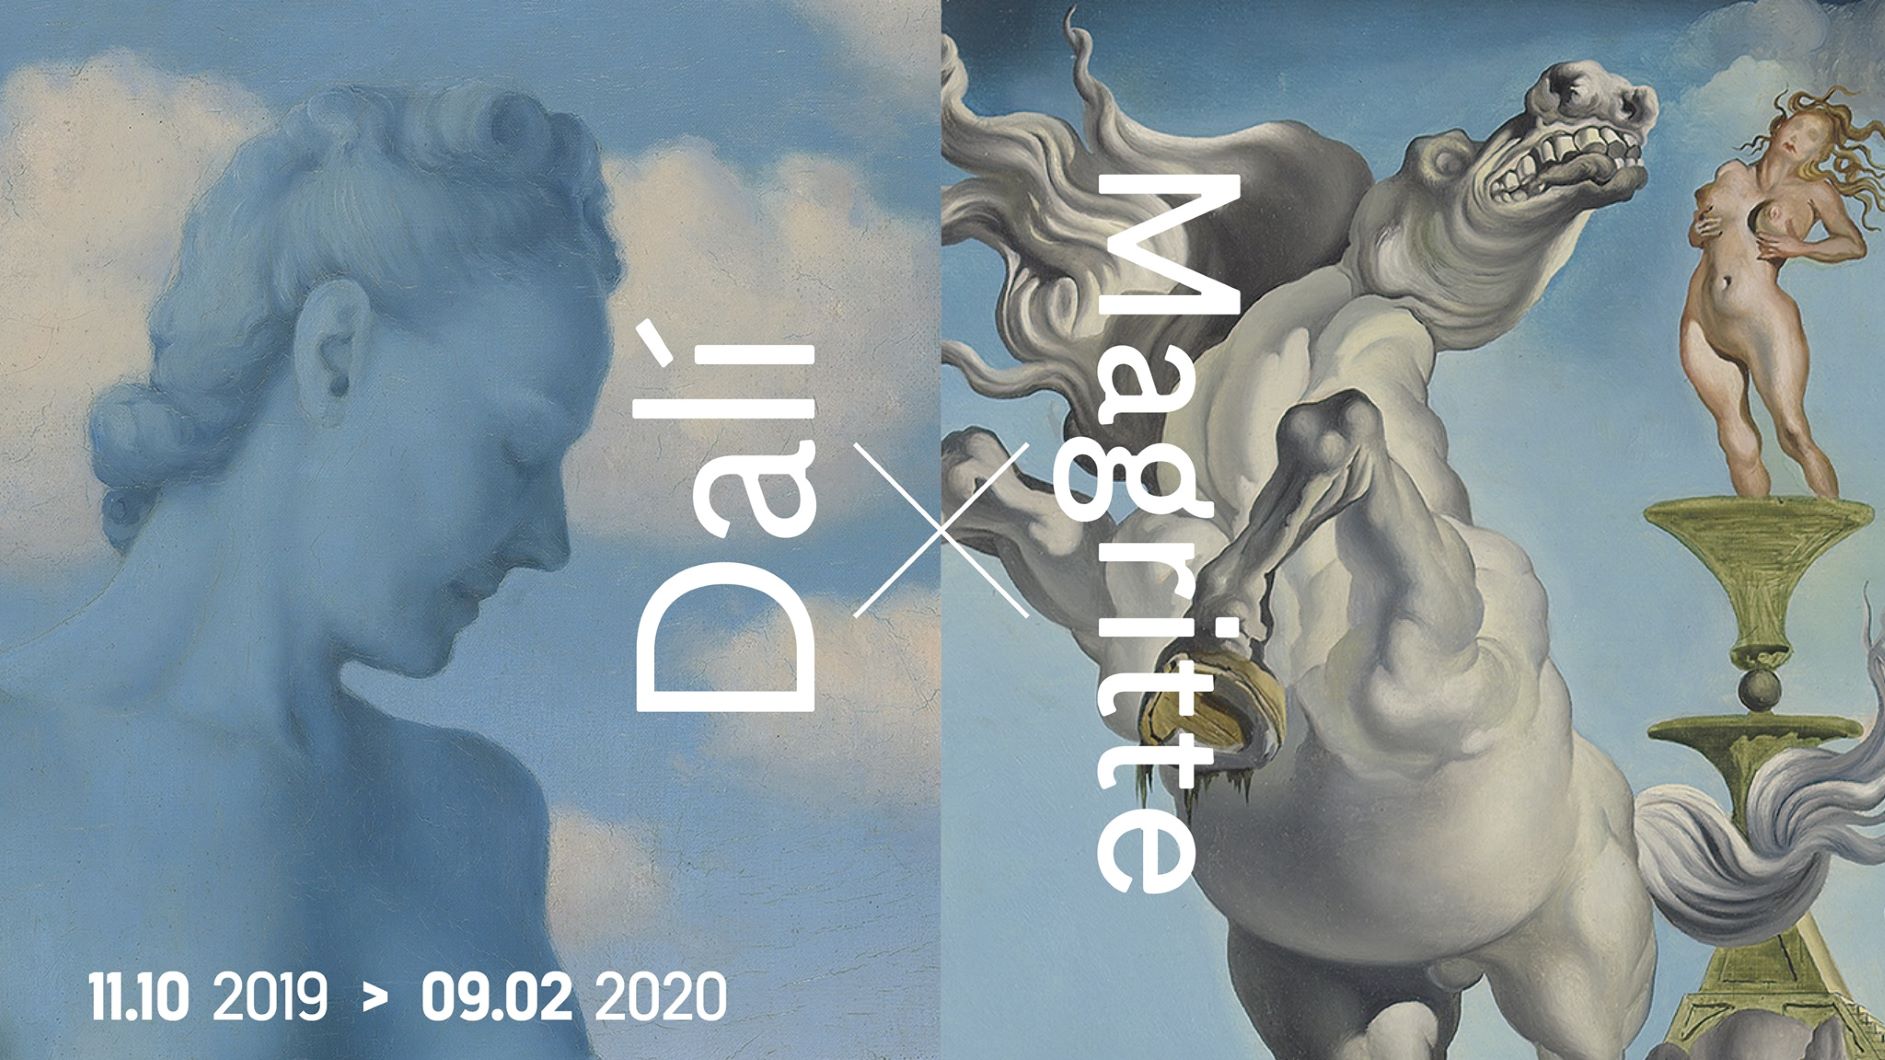 Dali & Magritte